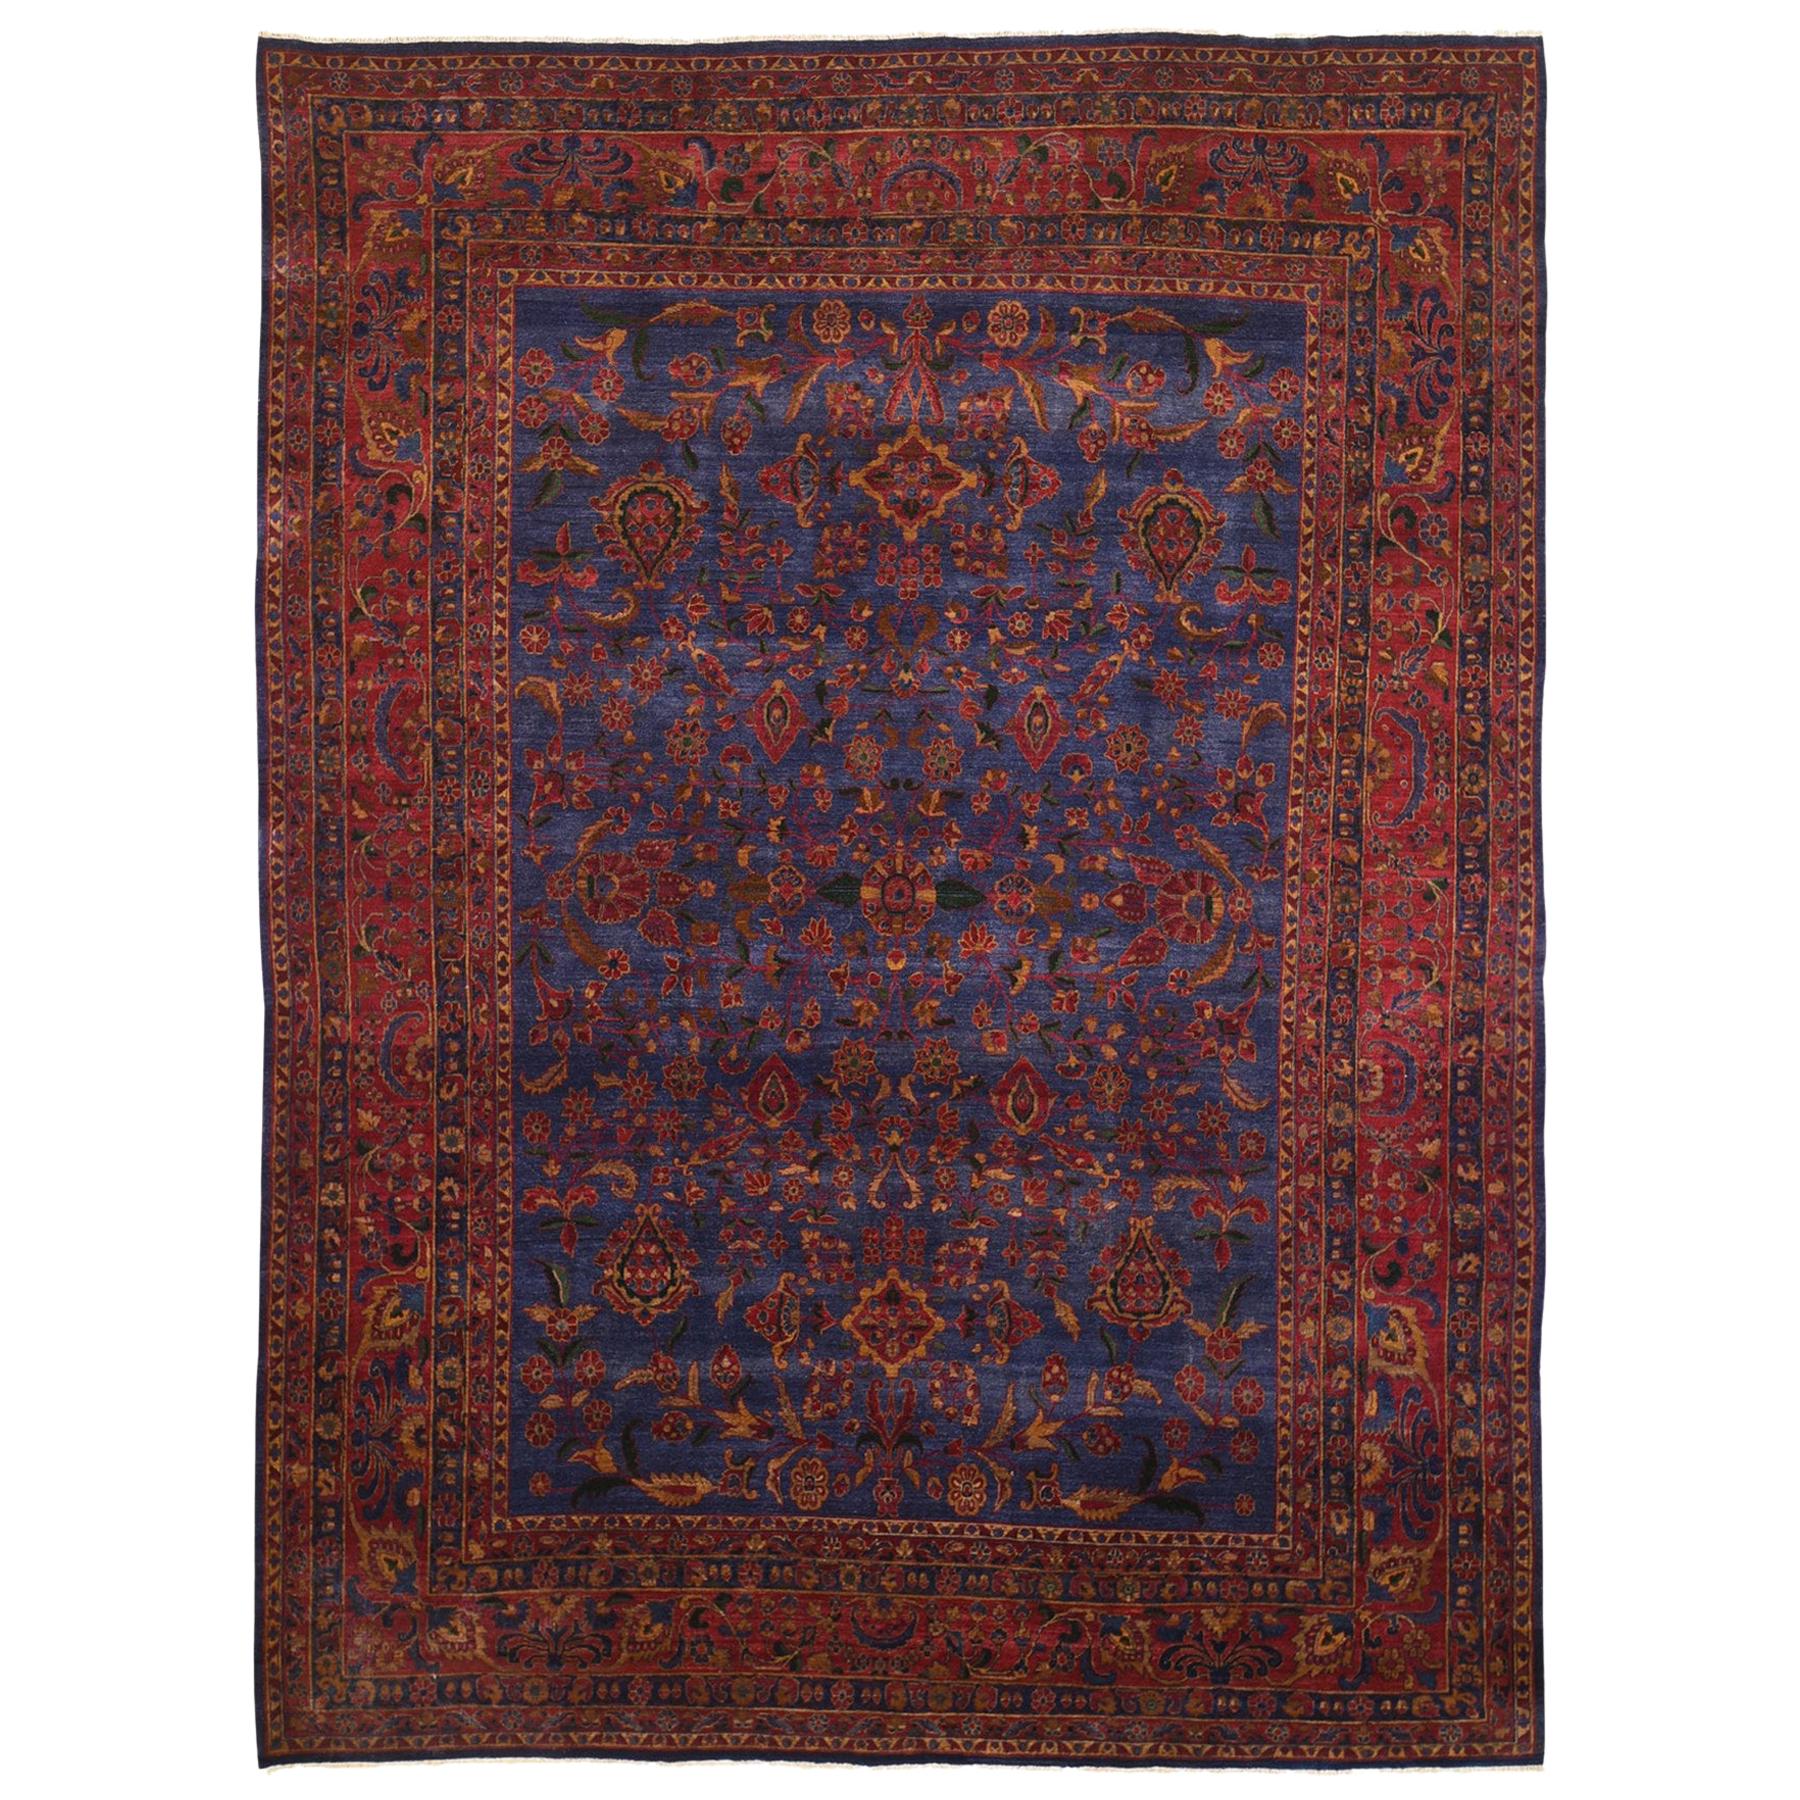 Antiker persischer Kashan-Teppich aus reiner Wolle in gutem Zustand mit leichtem Tragegefühl, handgeknüpft